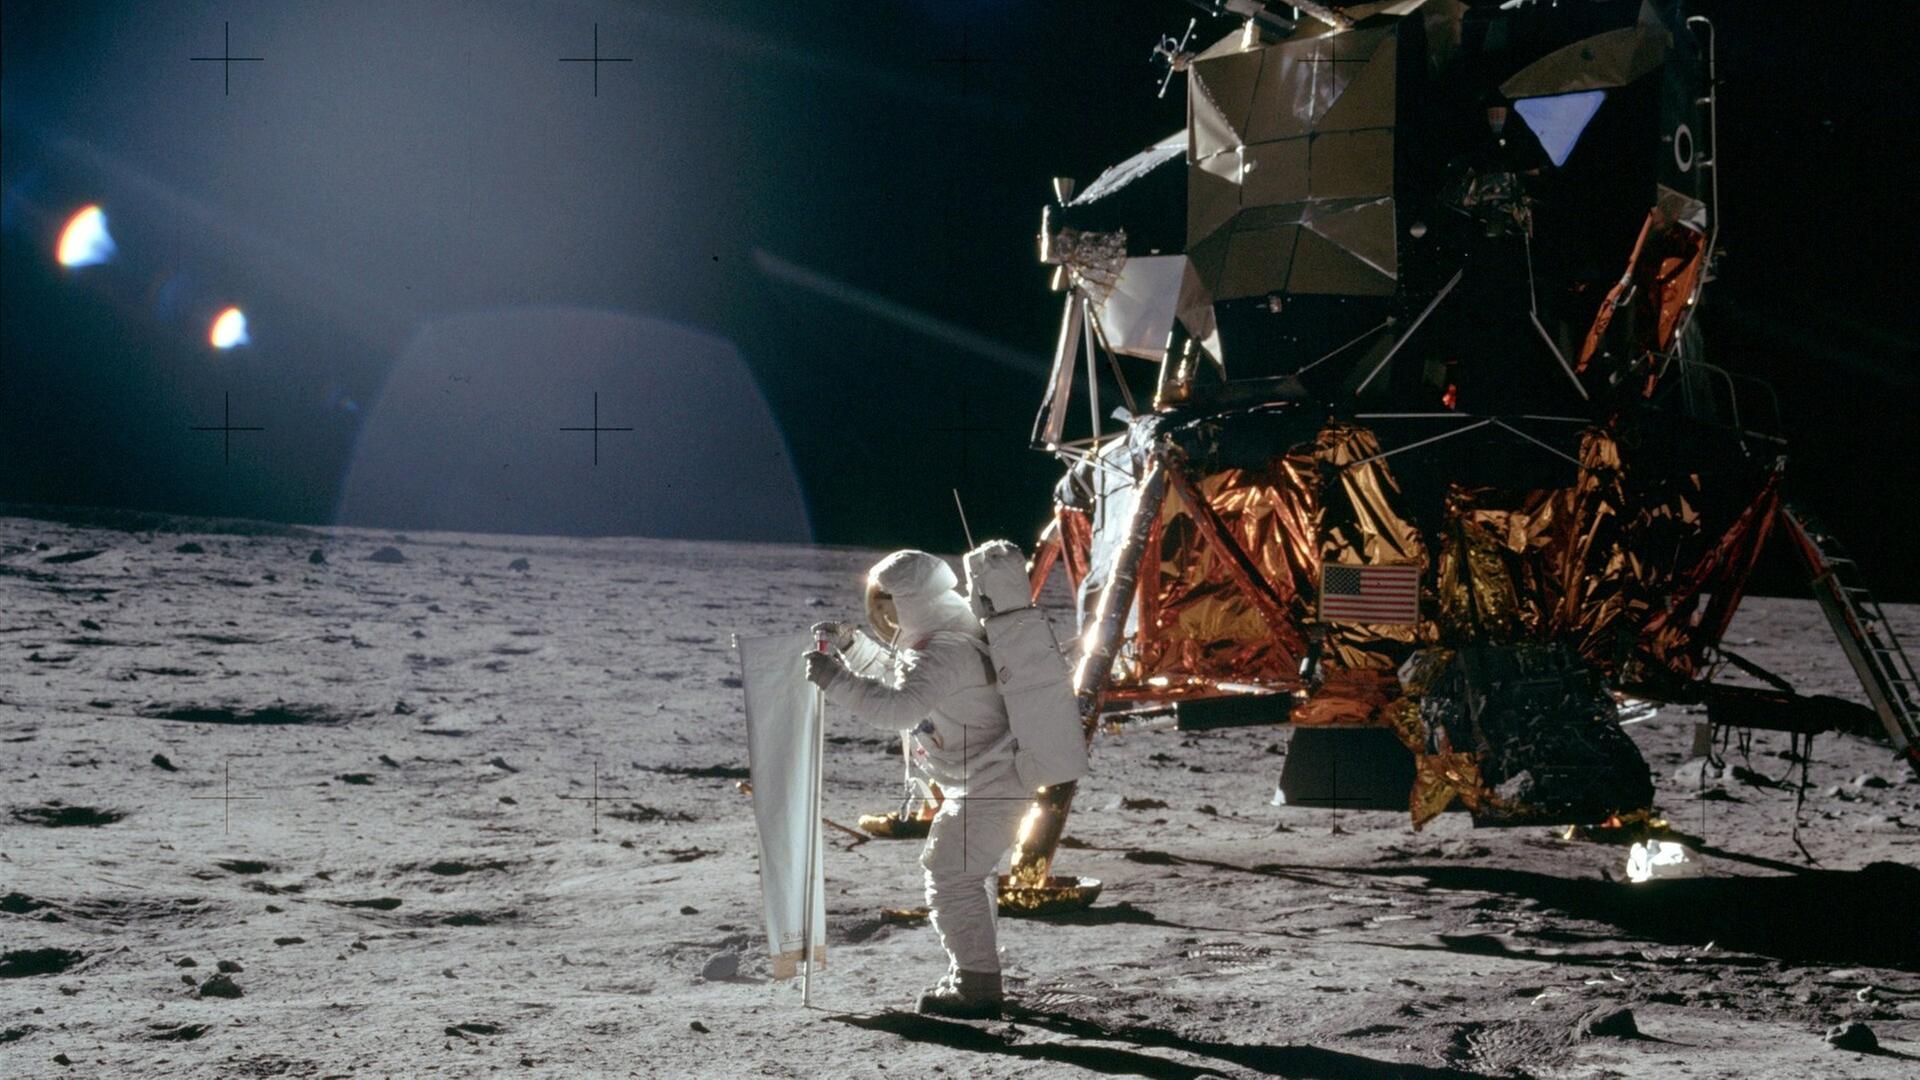 Noch vor dem Aufstellen der Flagge: Buzz Aldrin entrollt das Sonnenwind-Experiment auf dem Mond